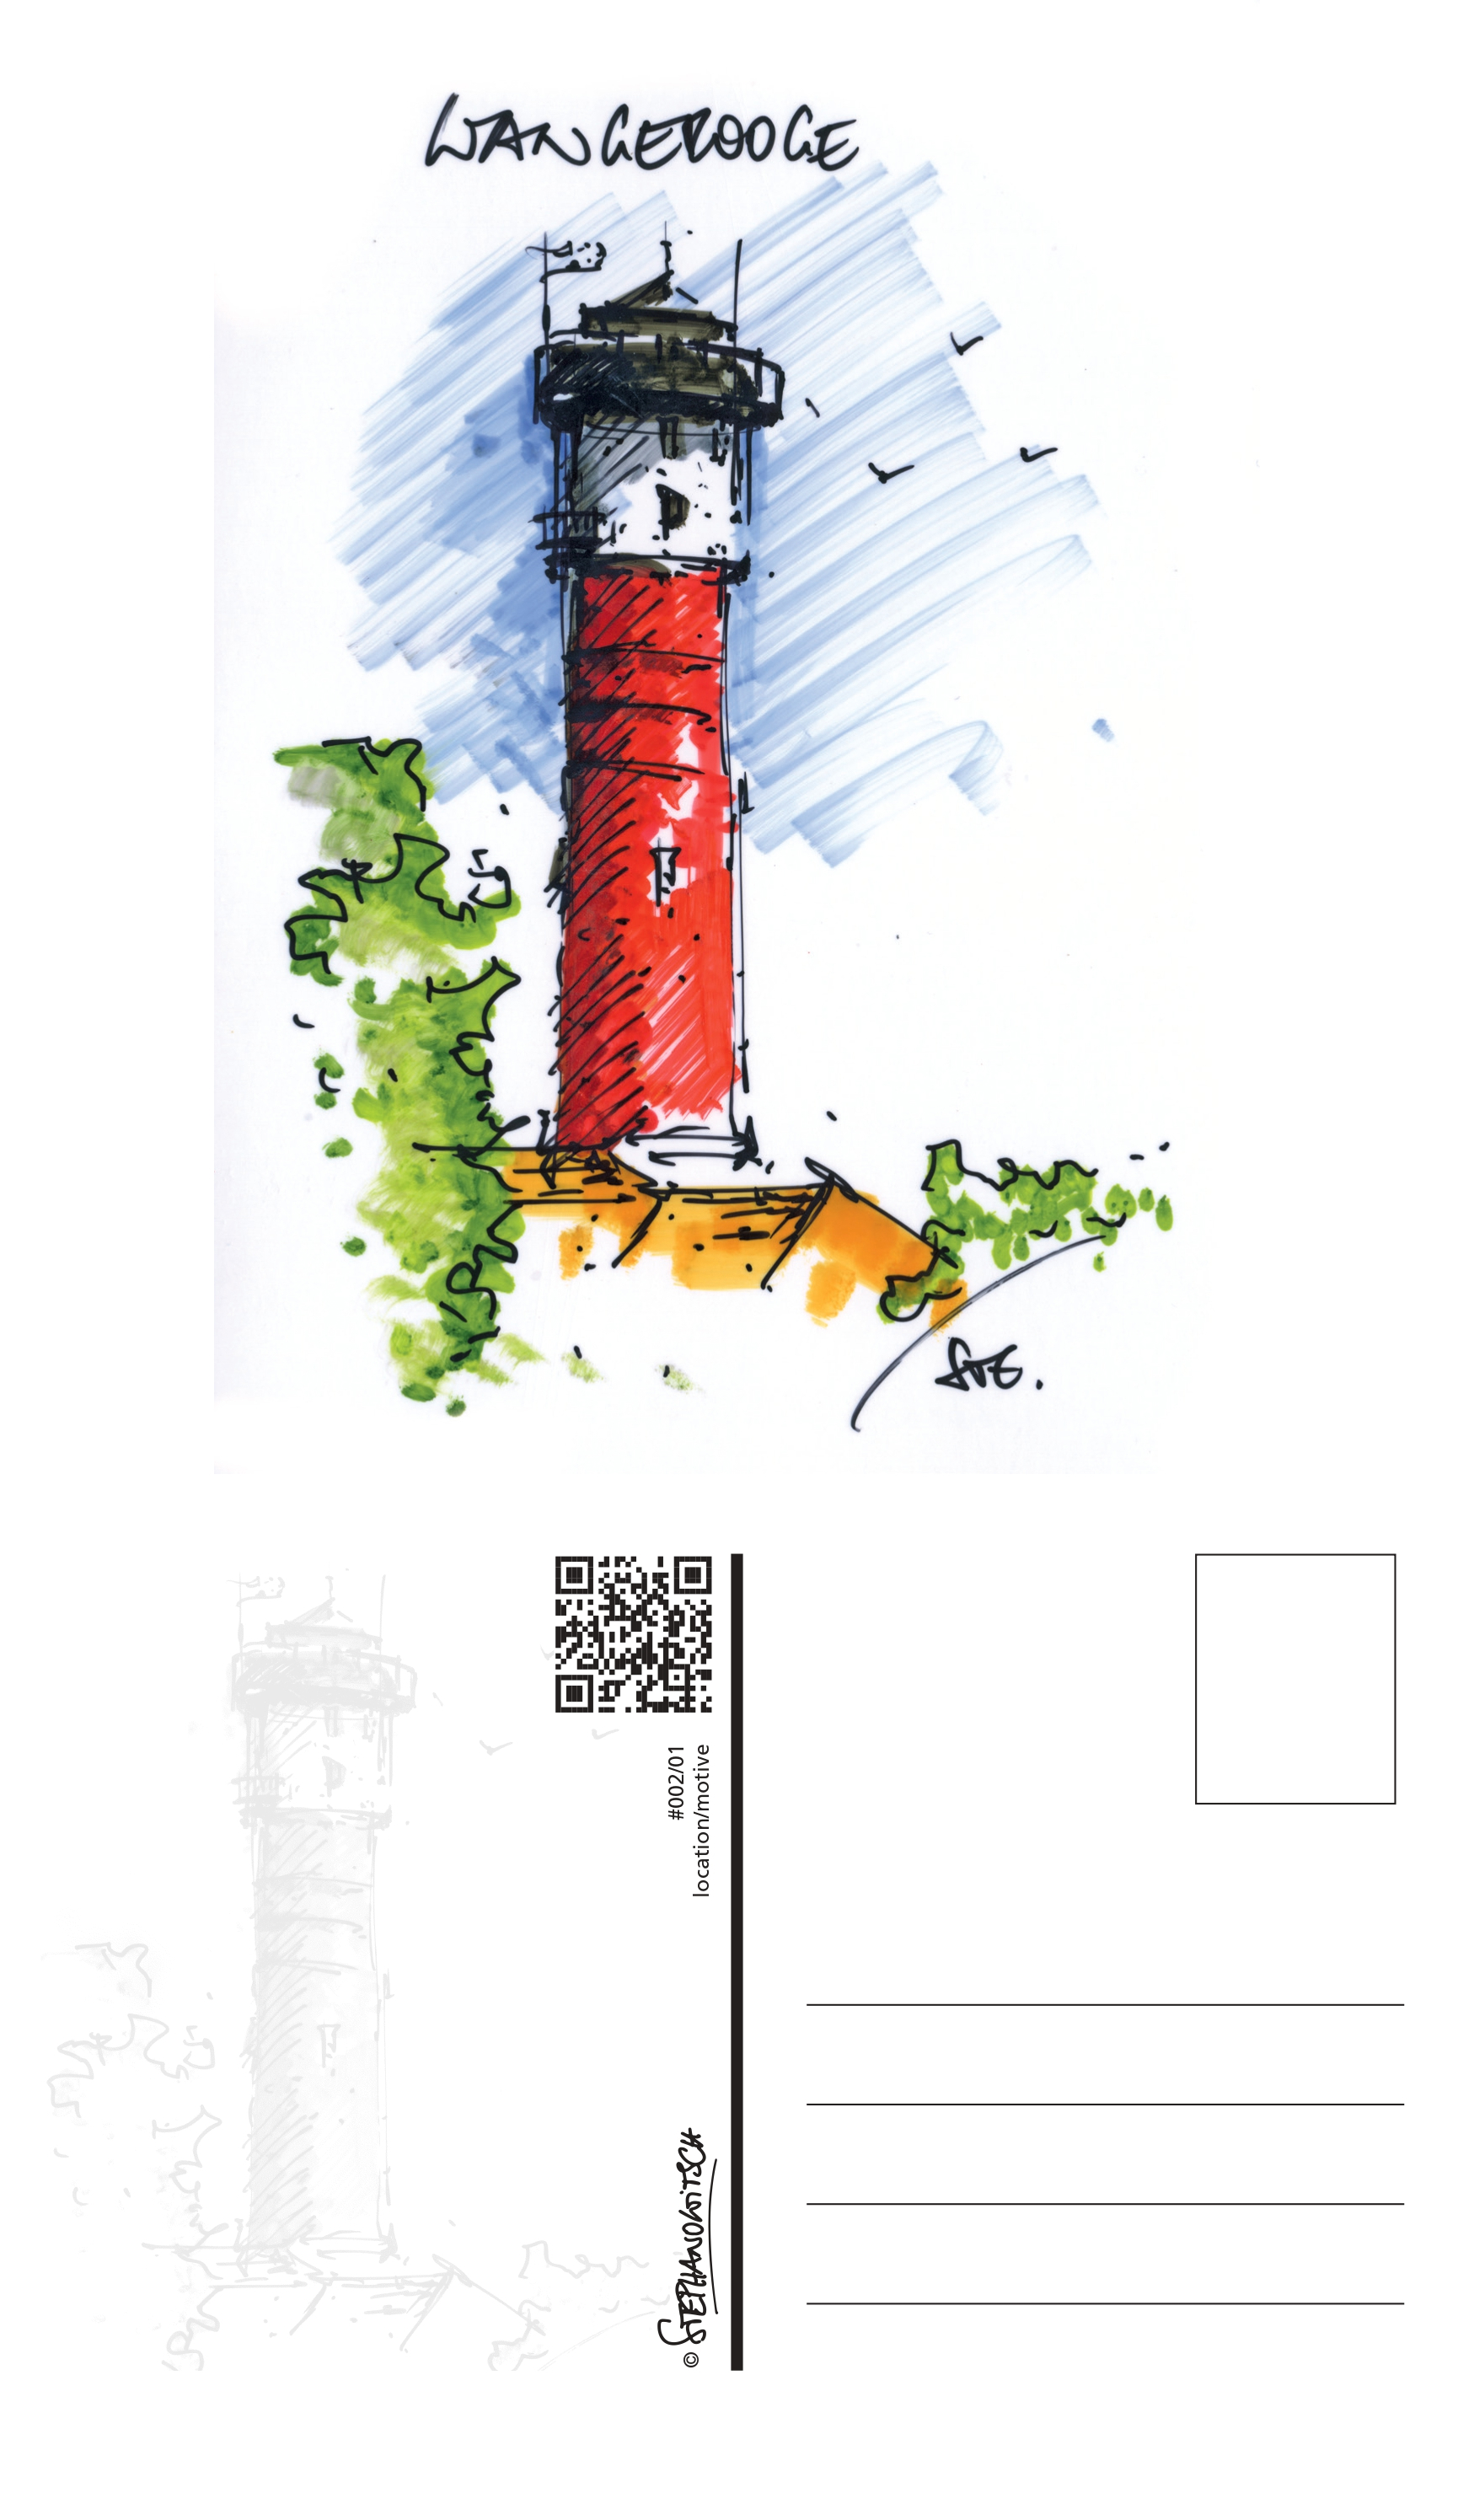 #002/01 Leuchtturm Wangerooge